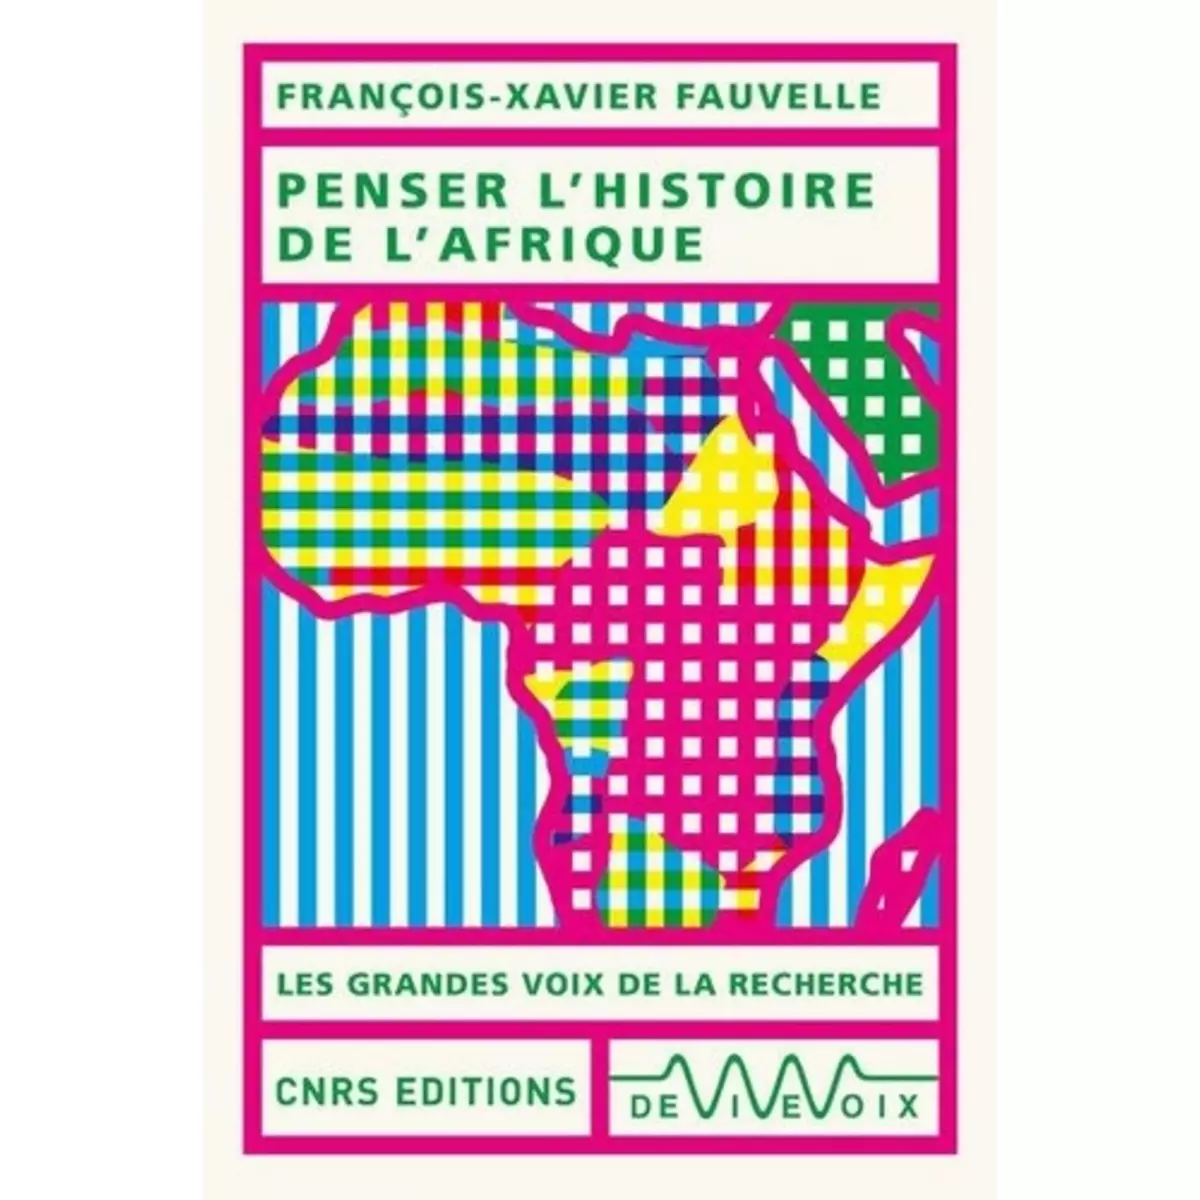  PENSER L'HISTOIRE DE L'AFRIQUE, Fauvelle François-Xavier